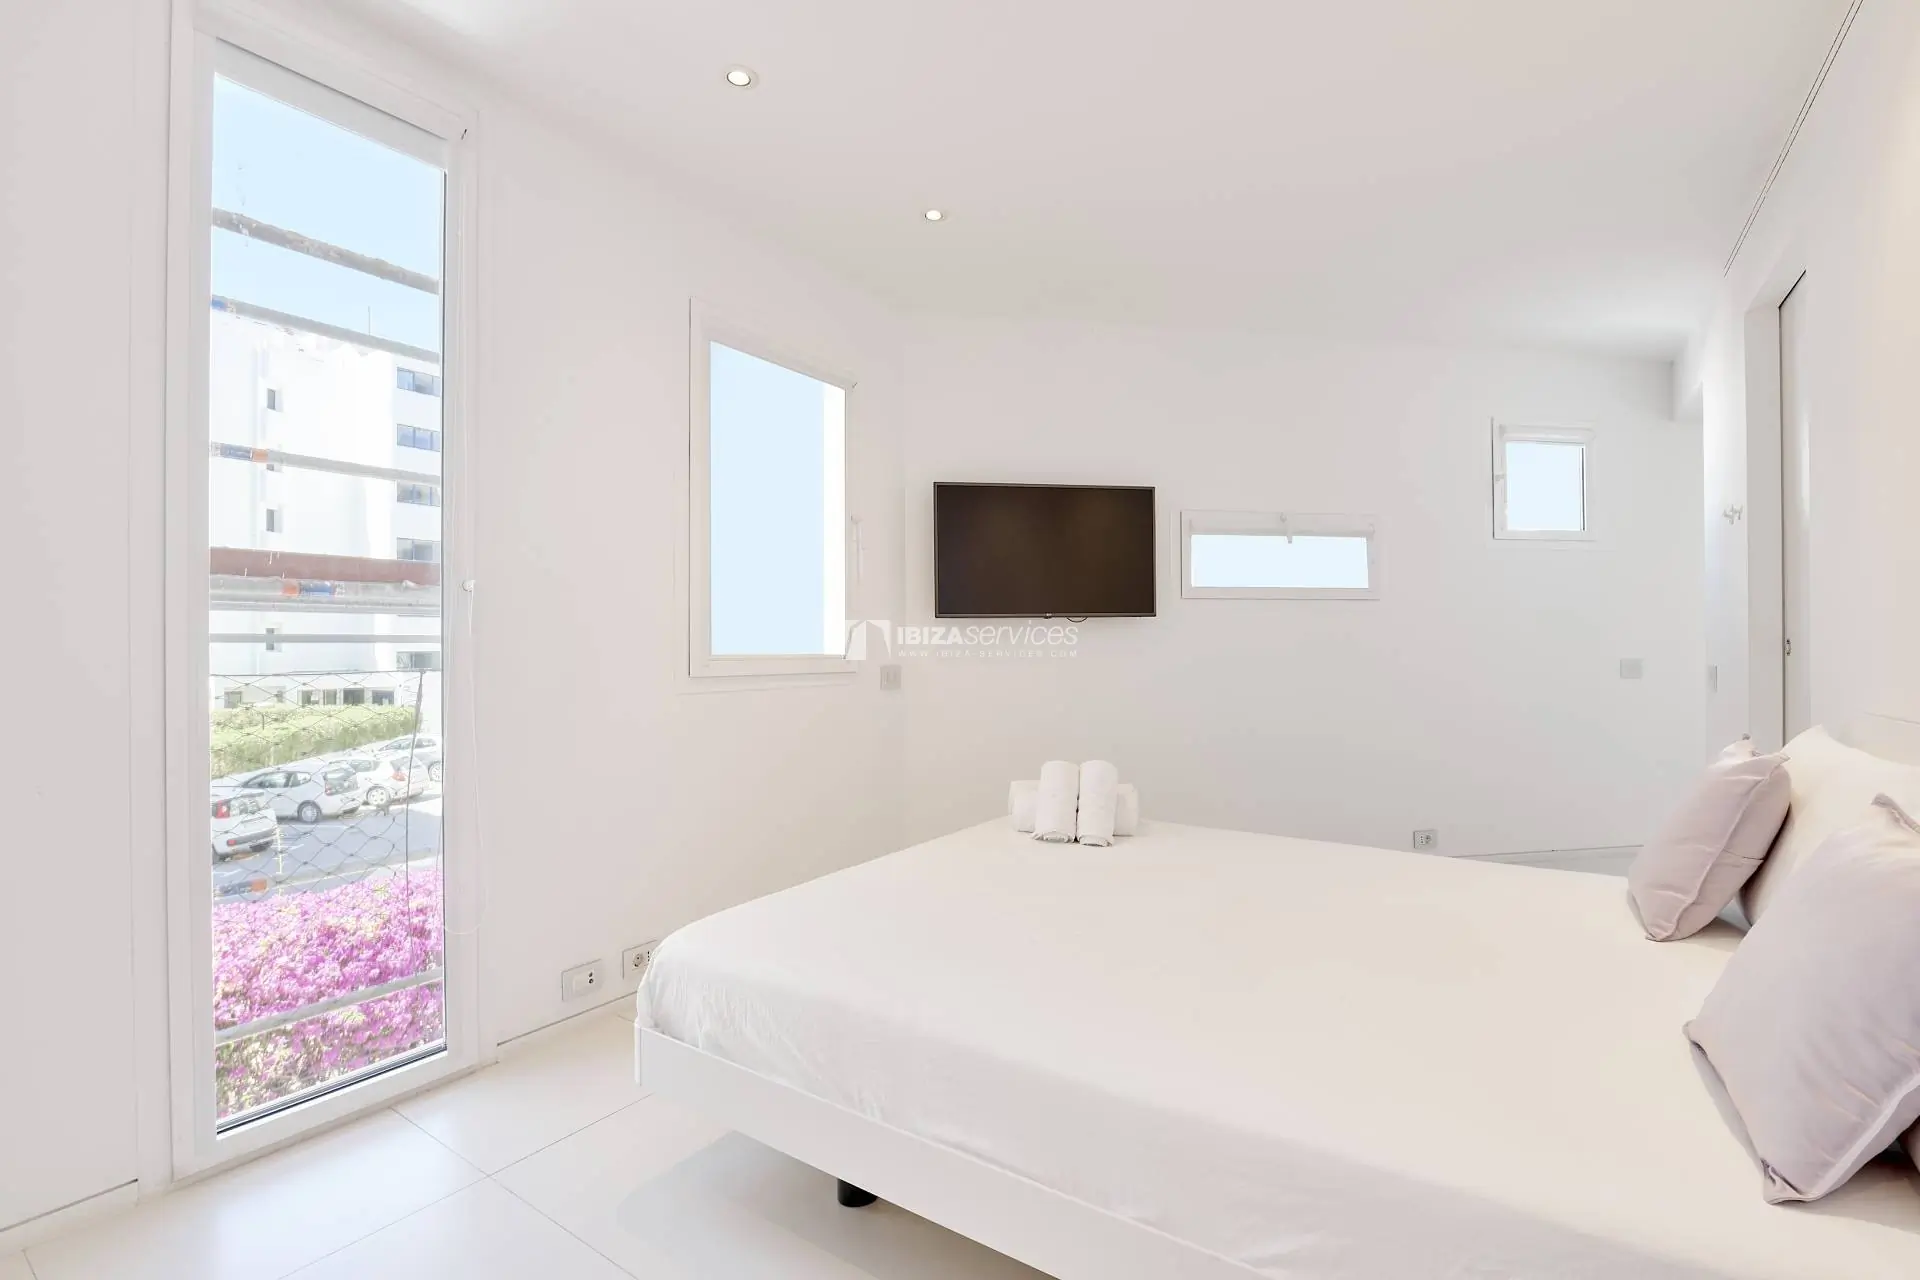 1071 2 bedroom apartment in Patio Blanco, Botafoch for sale